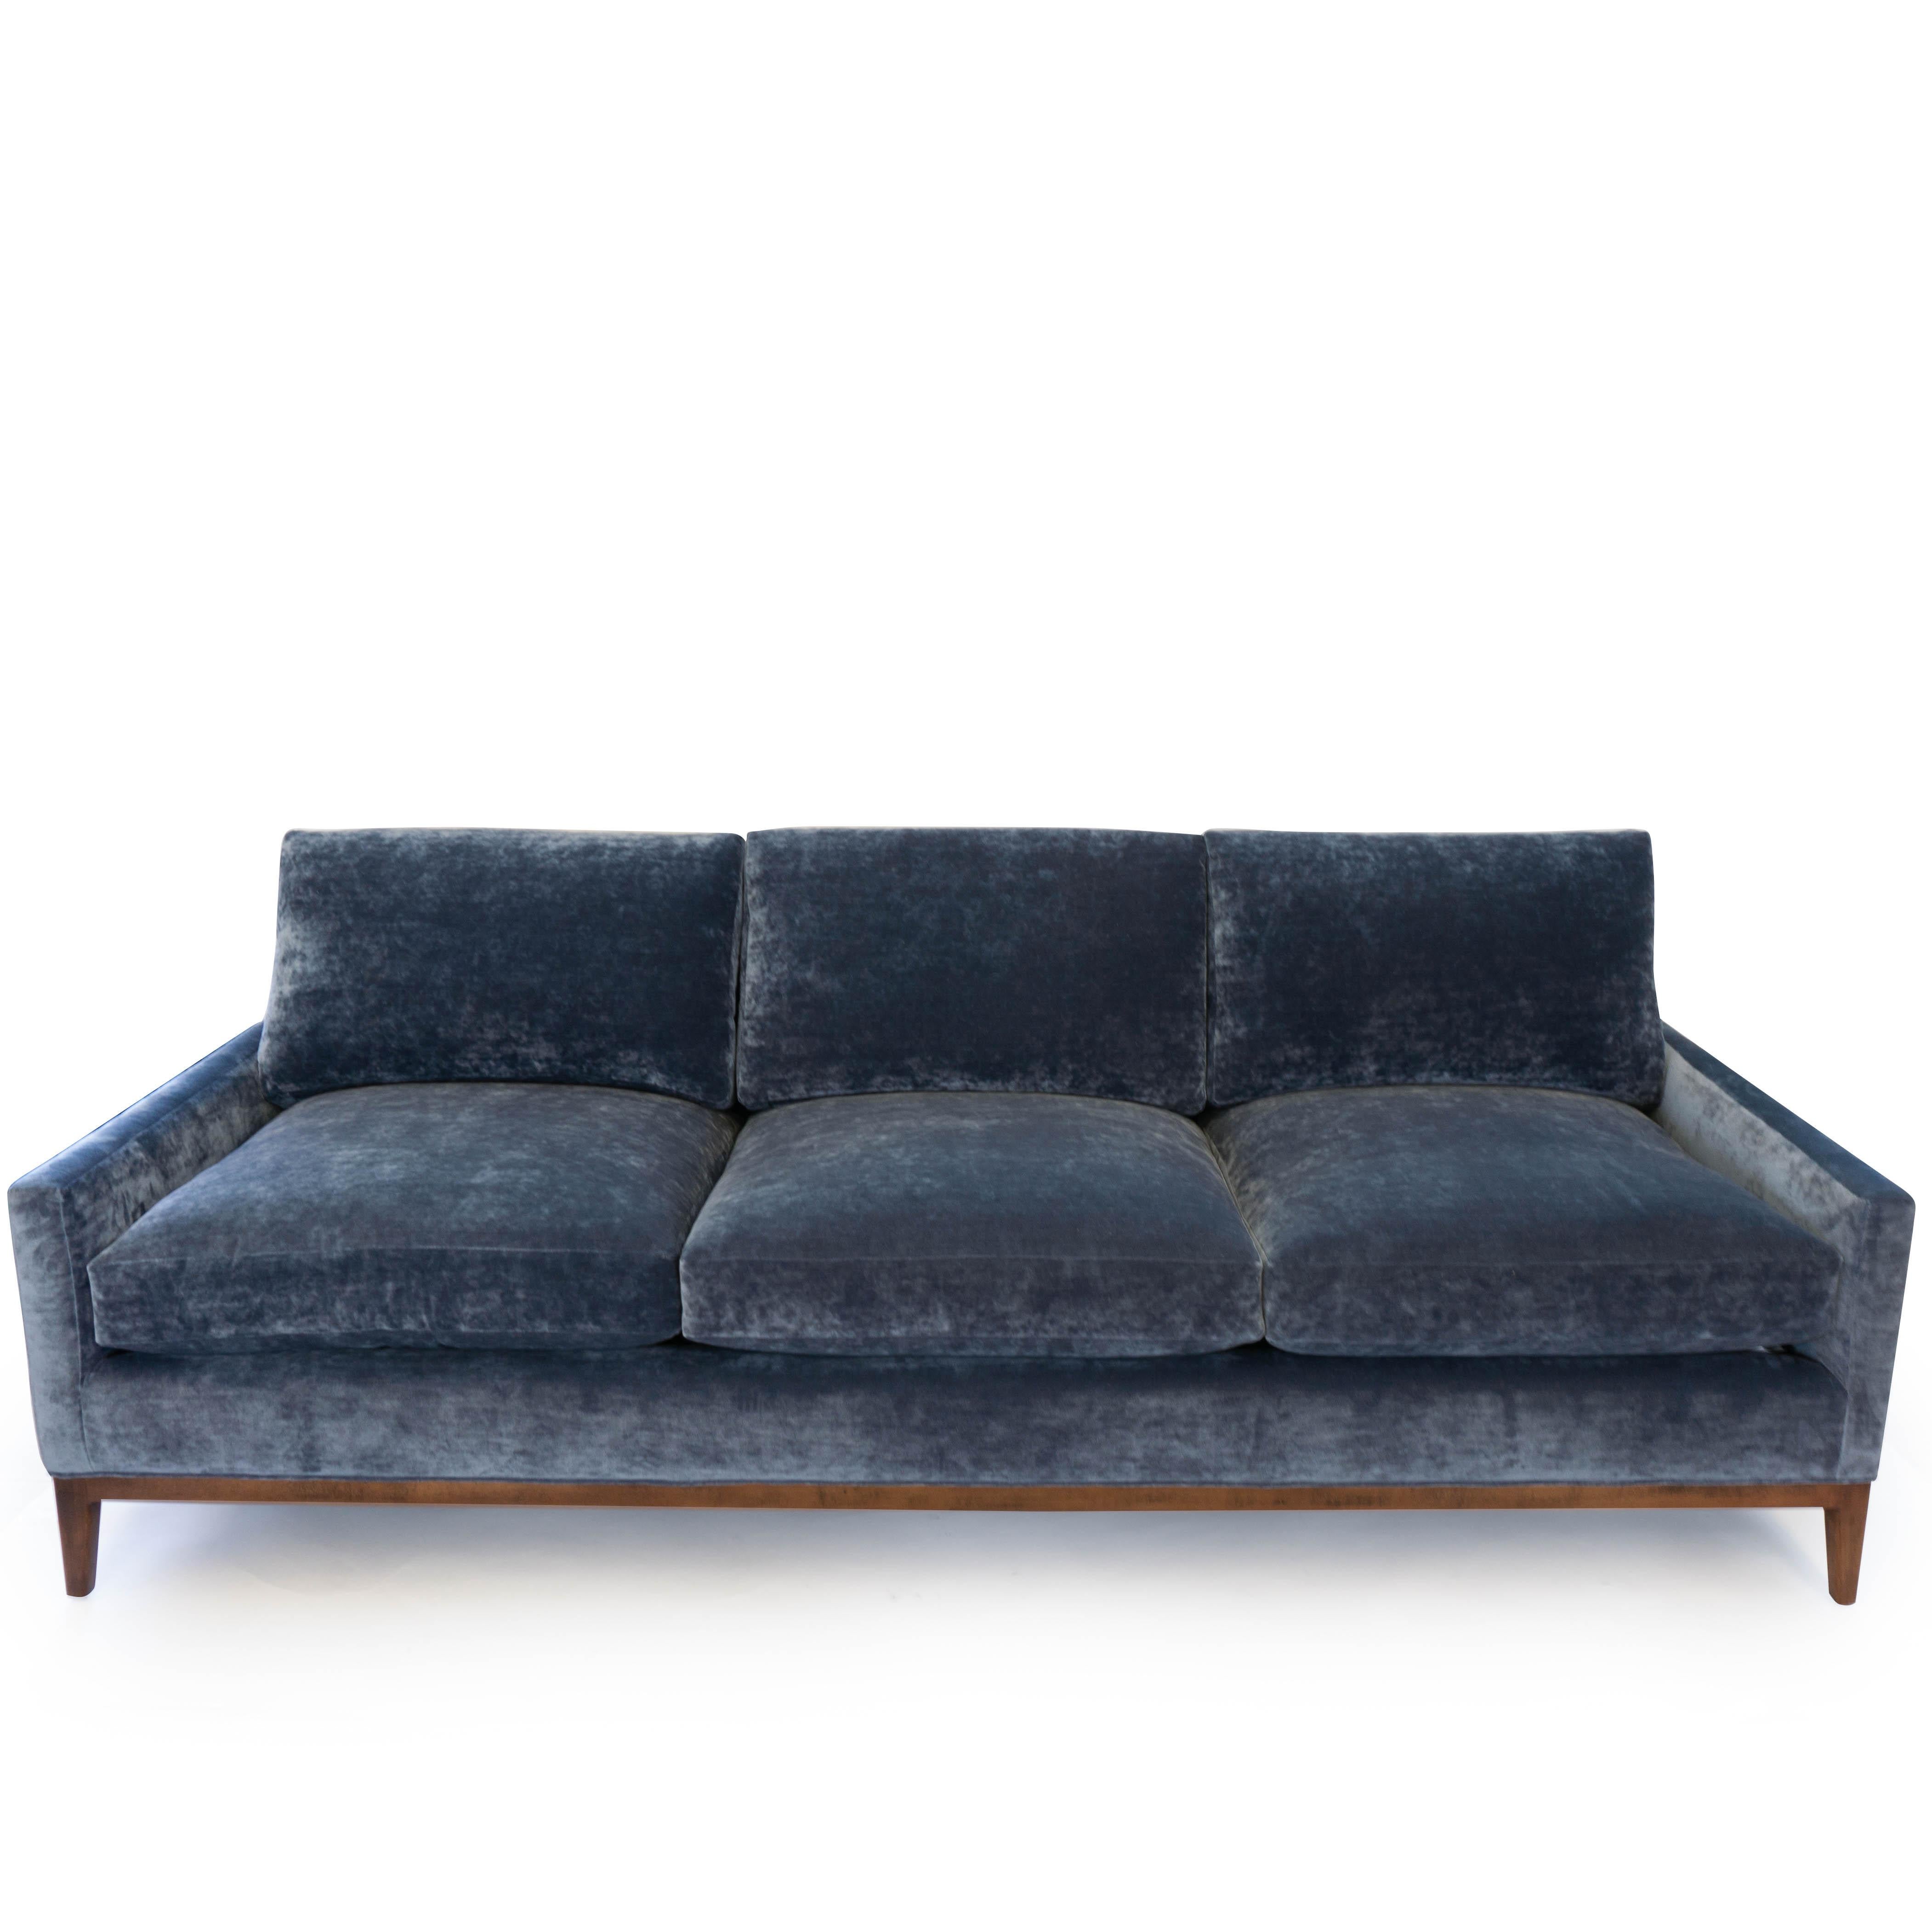 Dieses Mid-Century Modern inspirierte Sofa (bekannt als 